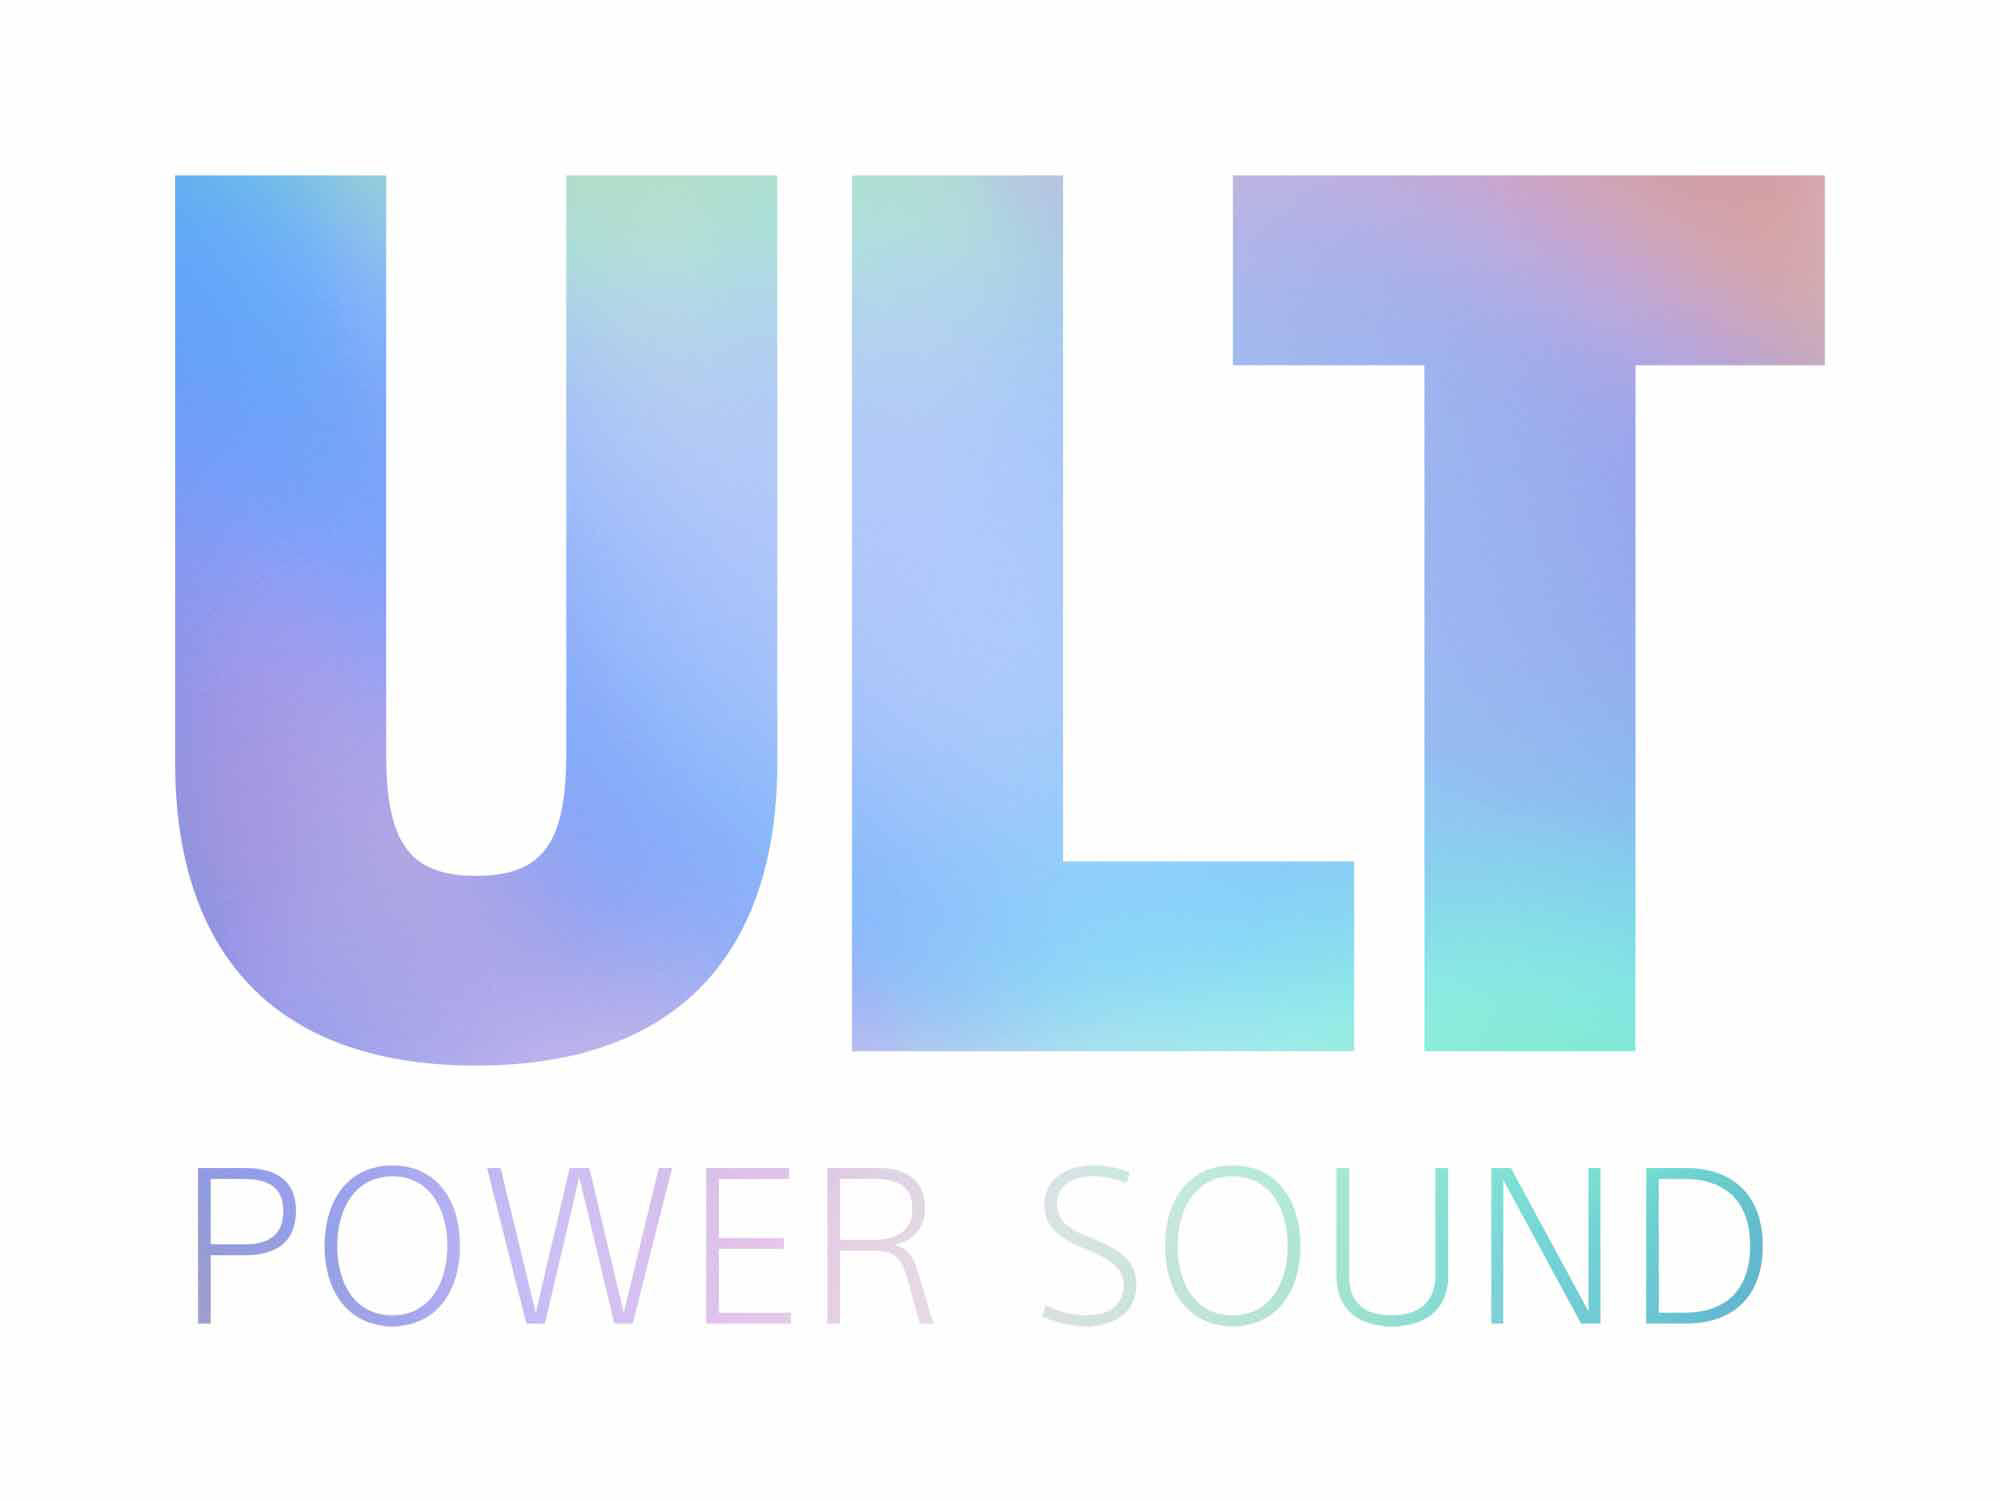 โซนี่ไทยเปิดตัว ULT Power Sound Series ครั้งแรก ชูพลังเสียงเบสหนักแน่นทรงพลัง เปิดประเดิมด้วย ULT WEAR หูฟังไร้สายซีรีส์ใหม่